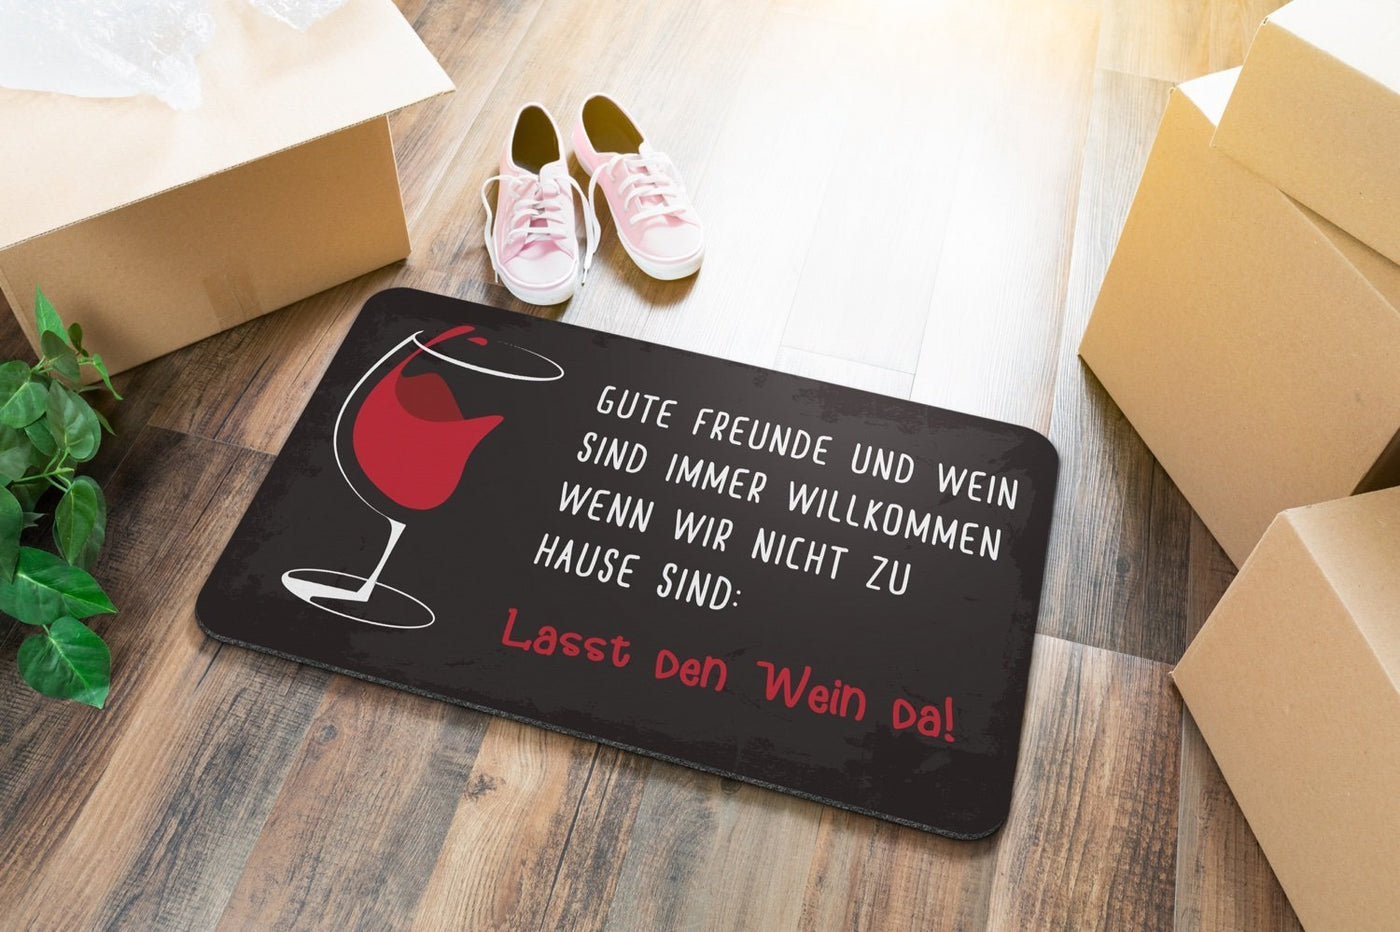 Bild: Fußmatte Gute Freunde und Wein sind Immer Willkommen Geschenkidee